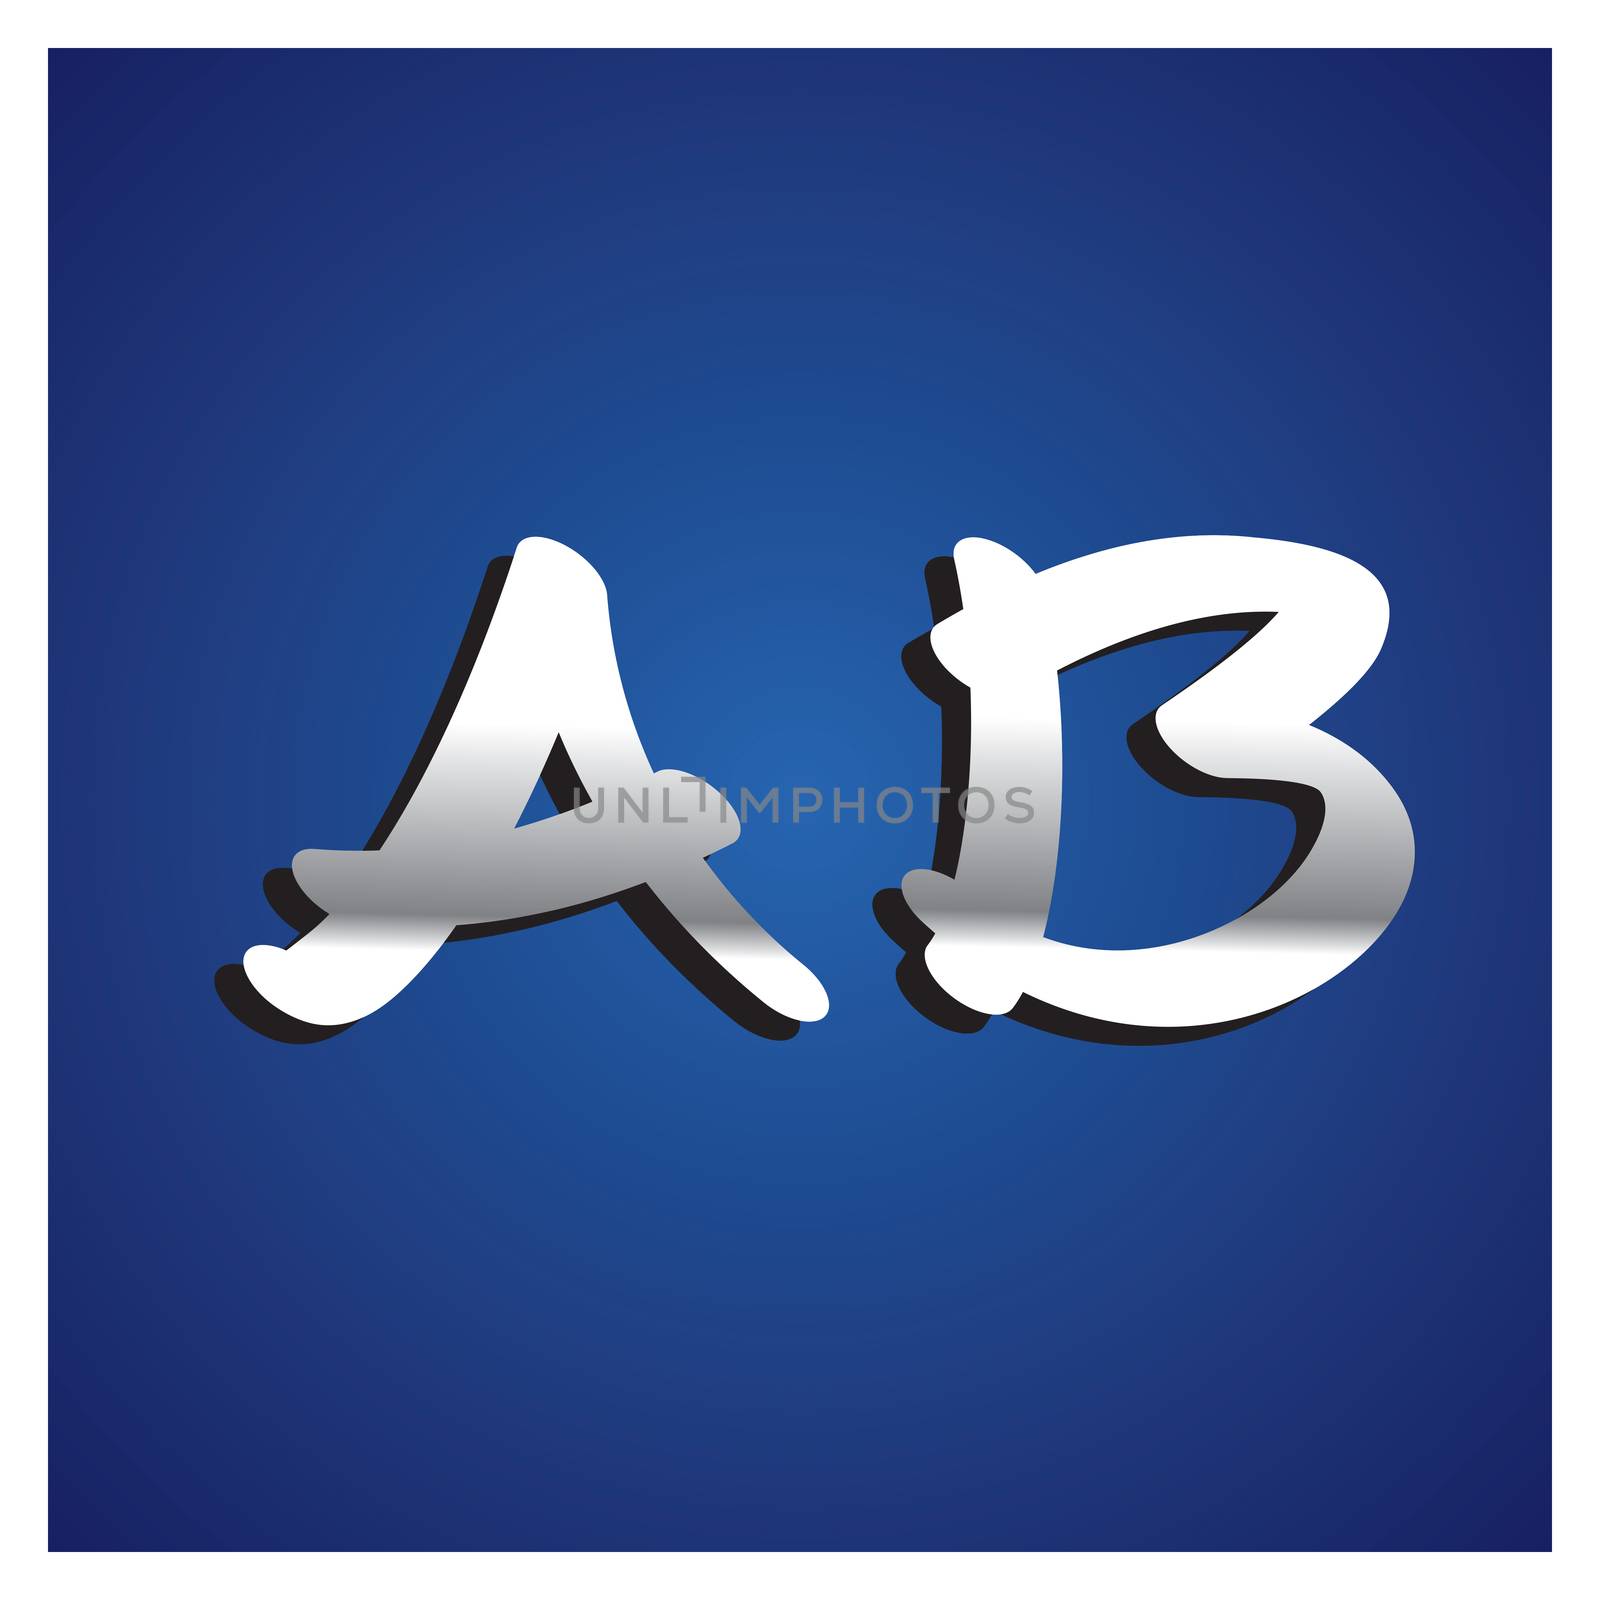 A-Z  Silver Alphabet Set on blue background